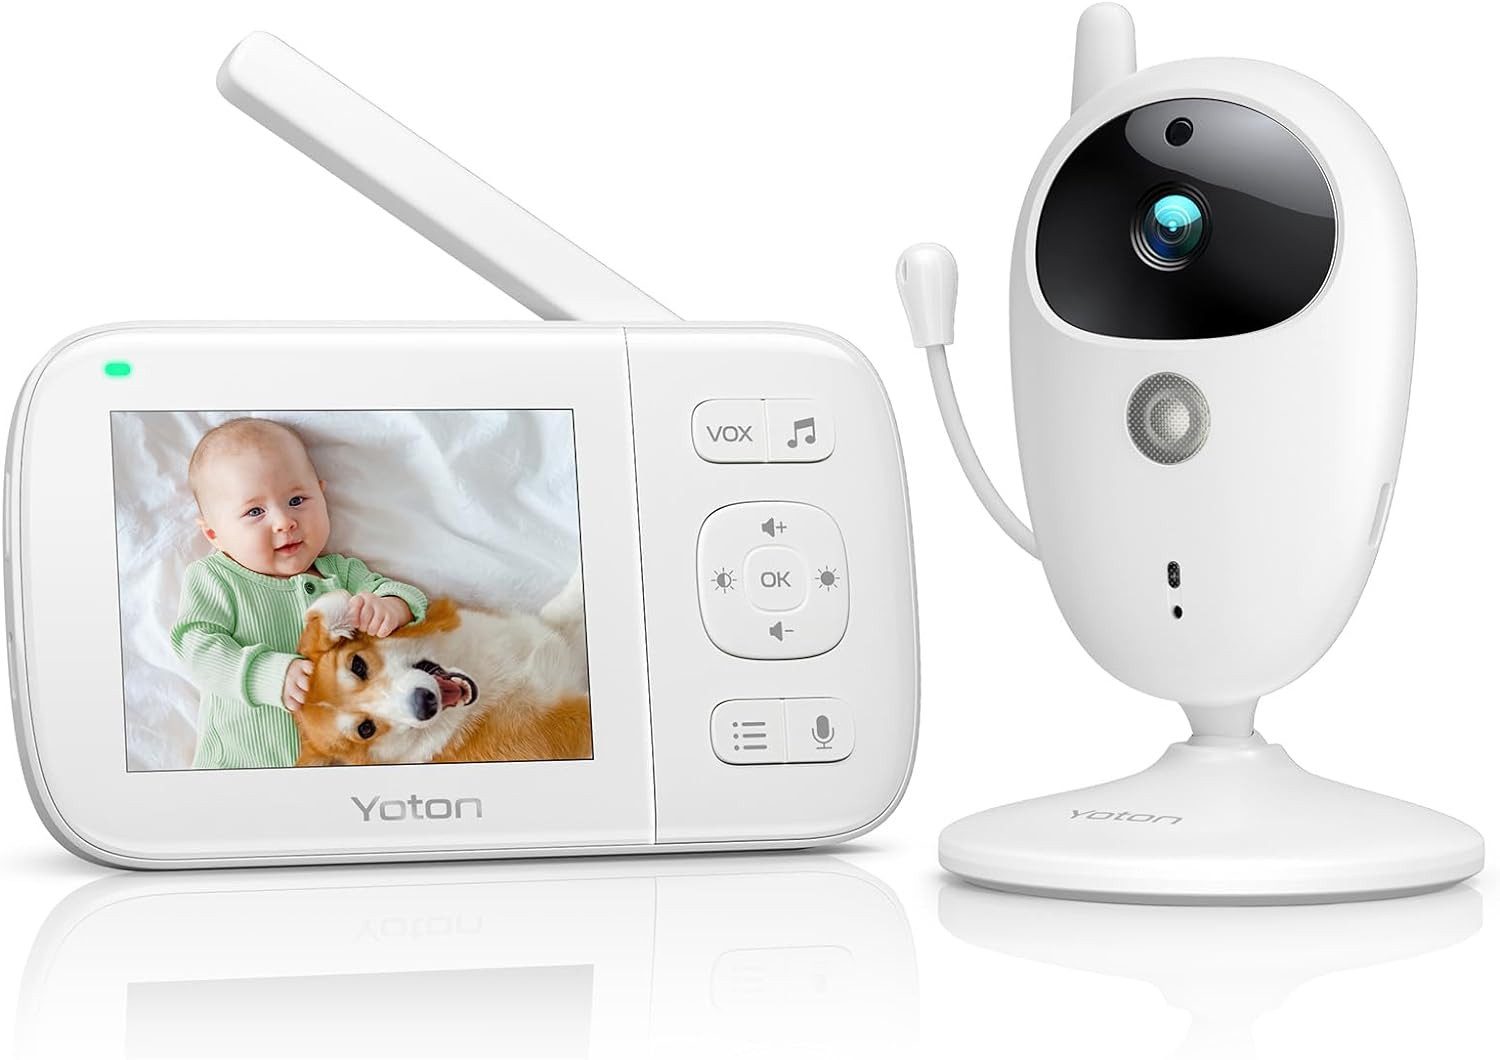 Yoton Video-Babyphone Babyphone mit Kamera, set, Babyphone, 3,5-Zoll-LCD, Nachtsicht, Zwei-Wege-Audio, Temperaturanzeige